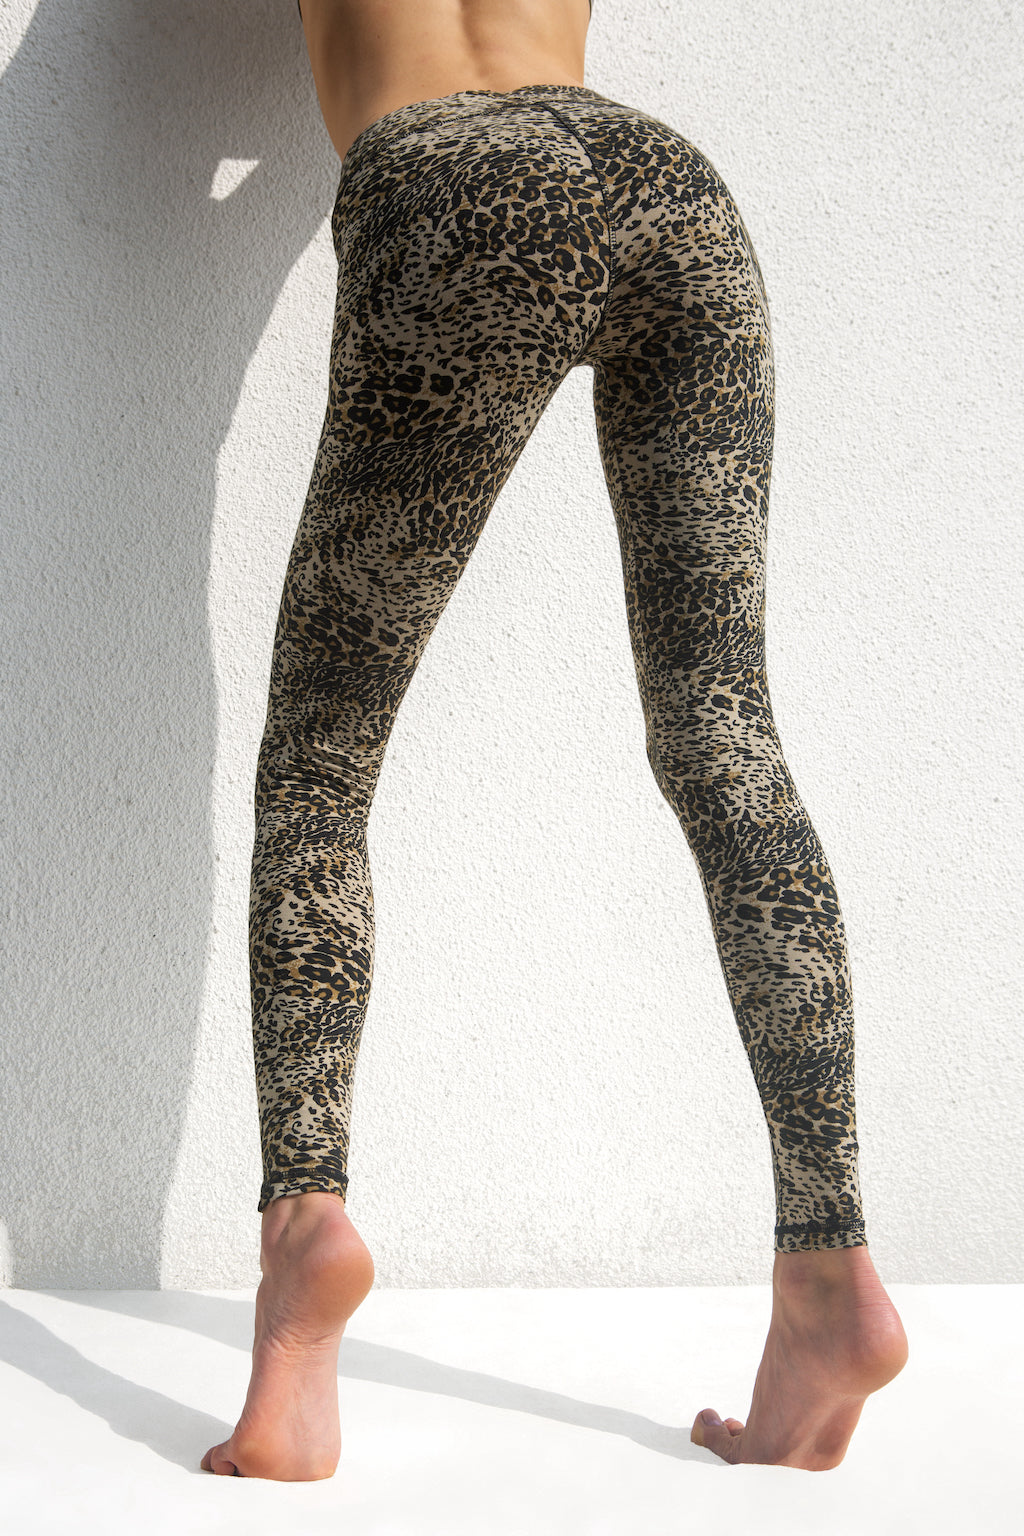 Leggings Leopard Cream